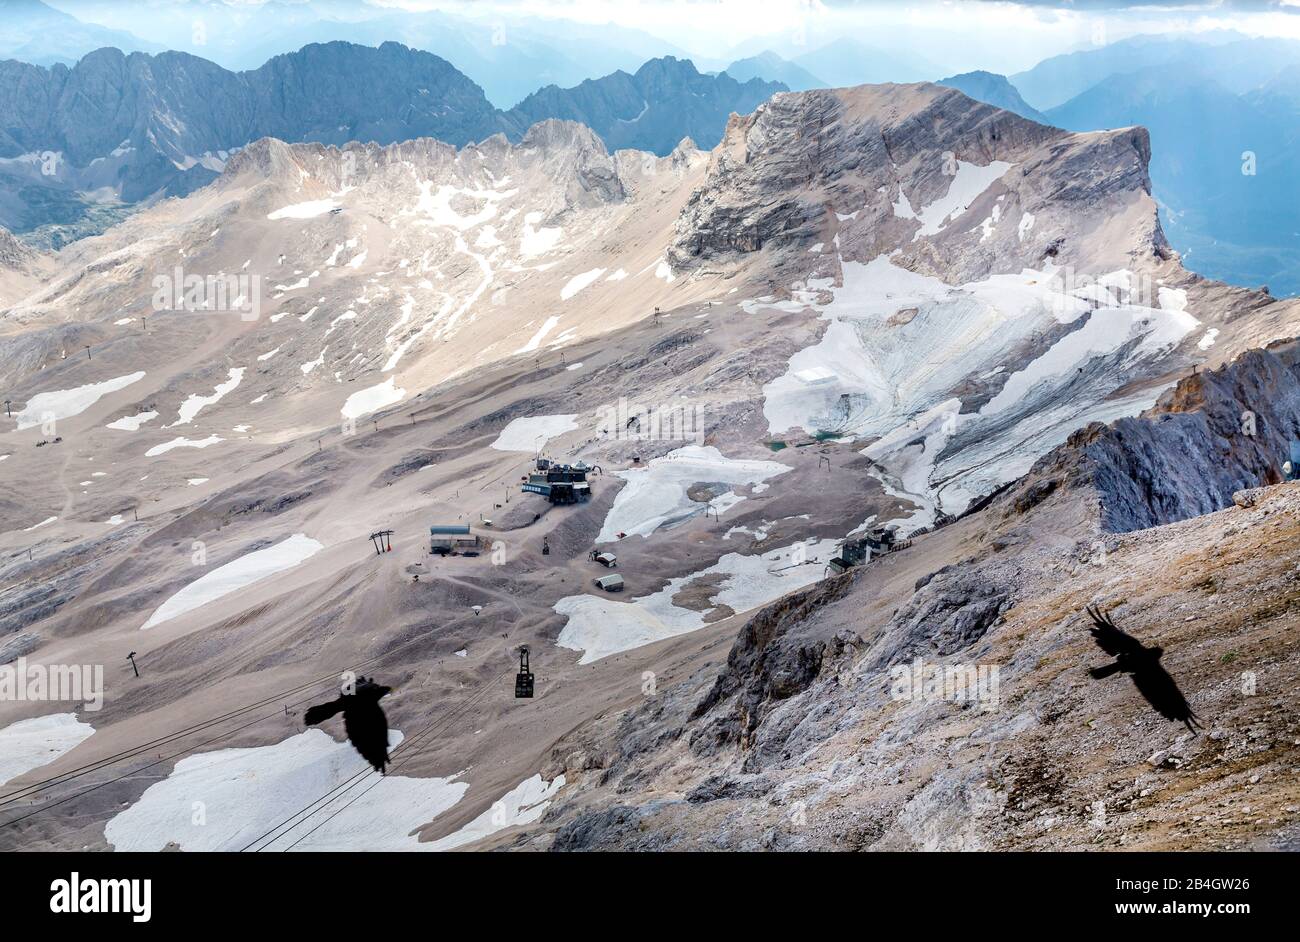 Schneeferner Gletscher mit dem Schneefernerkopf, 2875 m, Zugspitzmassiv, höchster Berggifpfel Deutschlands, Wettersteingebirge, Ostalpen, Alpen, Garmi Stock Photo